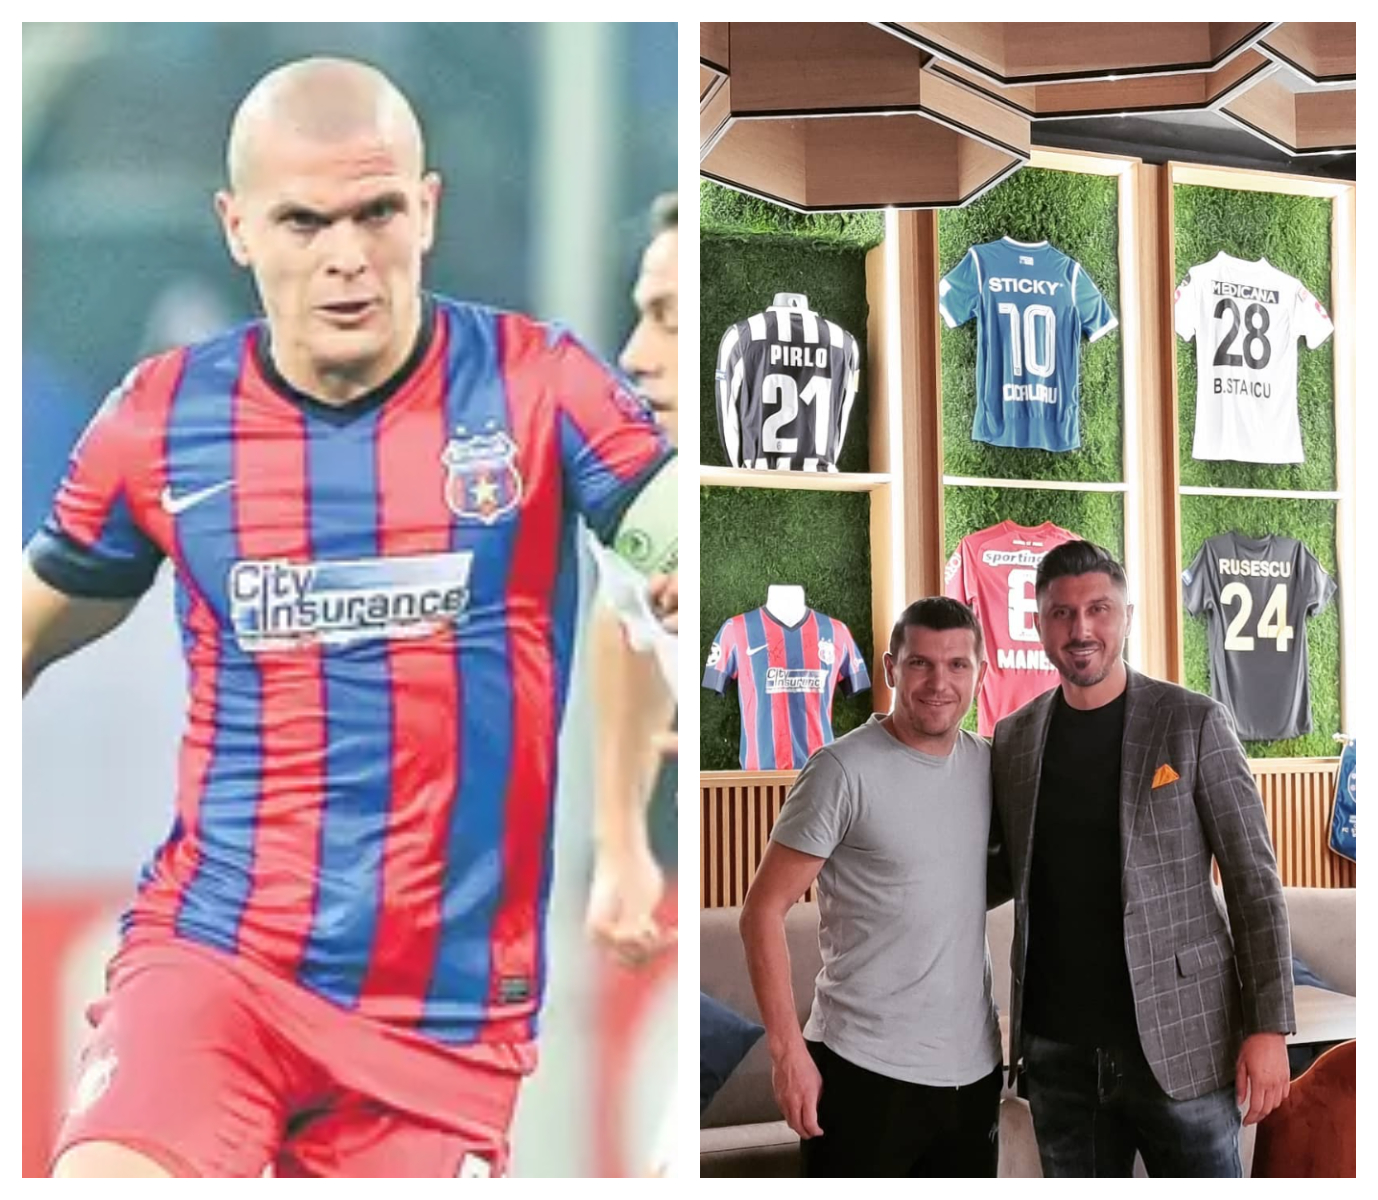 Fosta vedetă a naționalei de fotbal, Alexandru Bourceanu a devenit patron de sport pub. ”Mi-am dorit un wine bar”